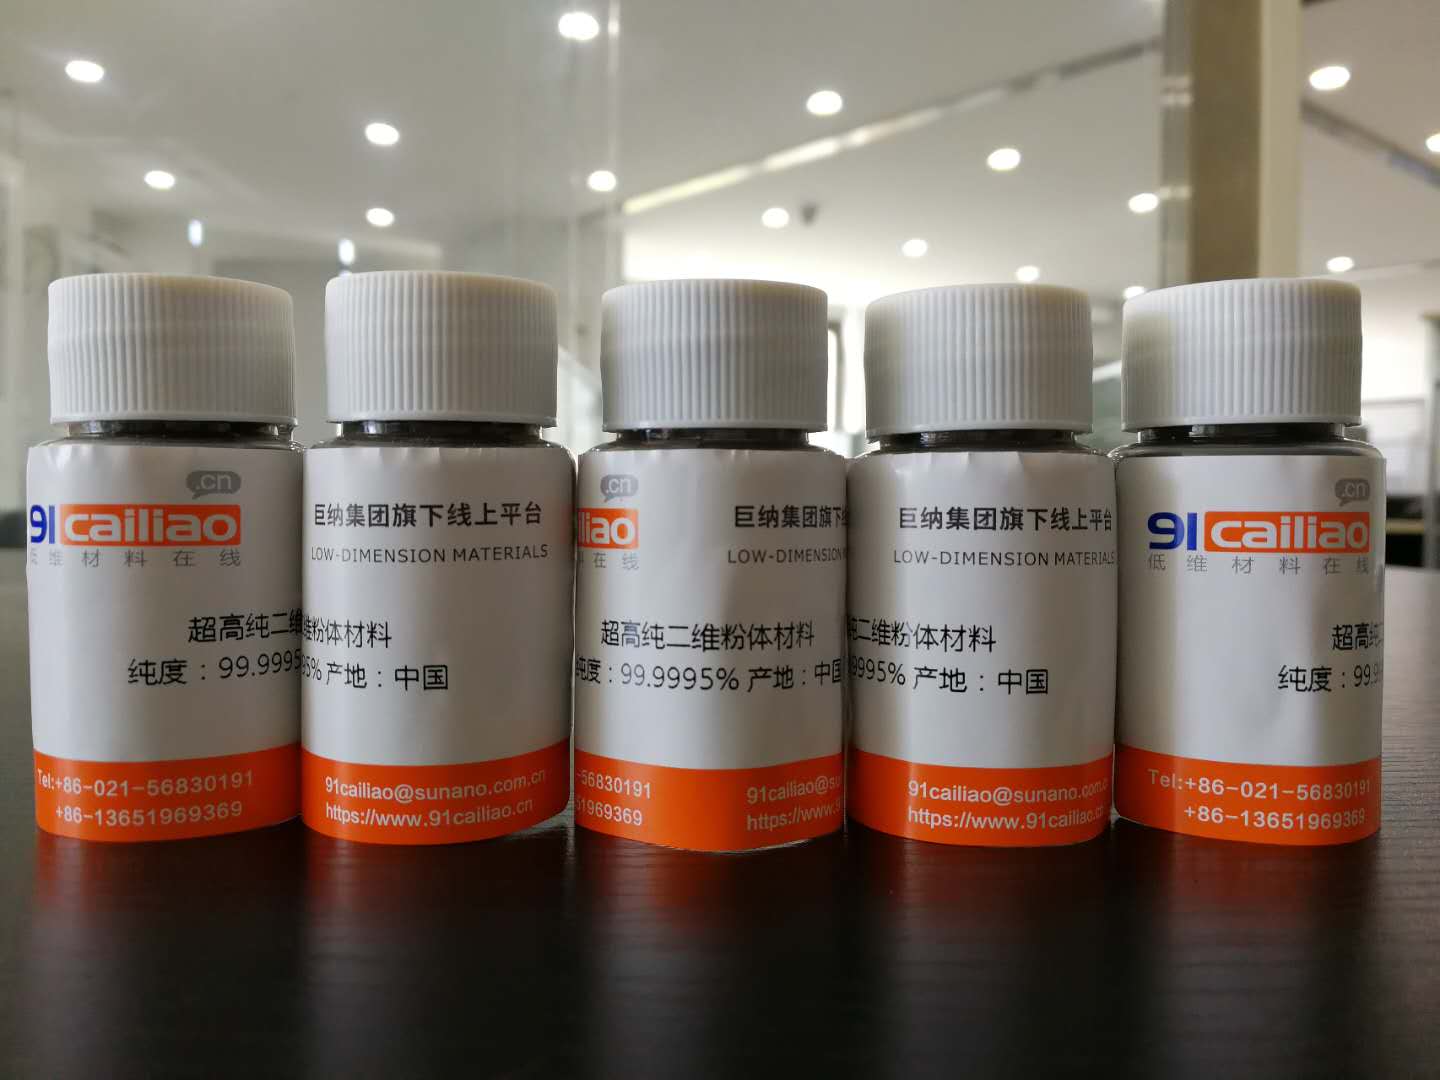 高纯GaSe粉末 高纯硒化镓粉末(1g)